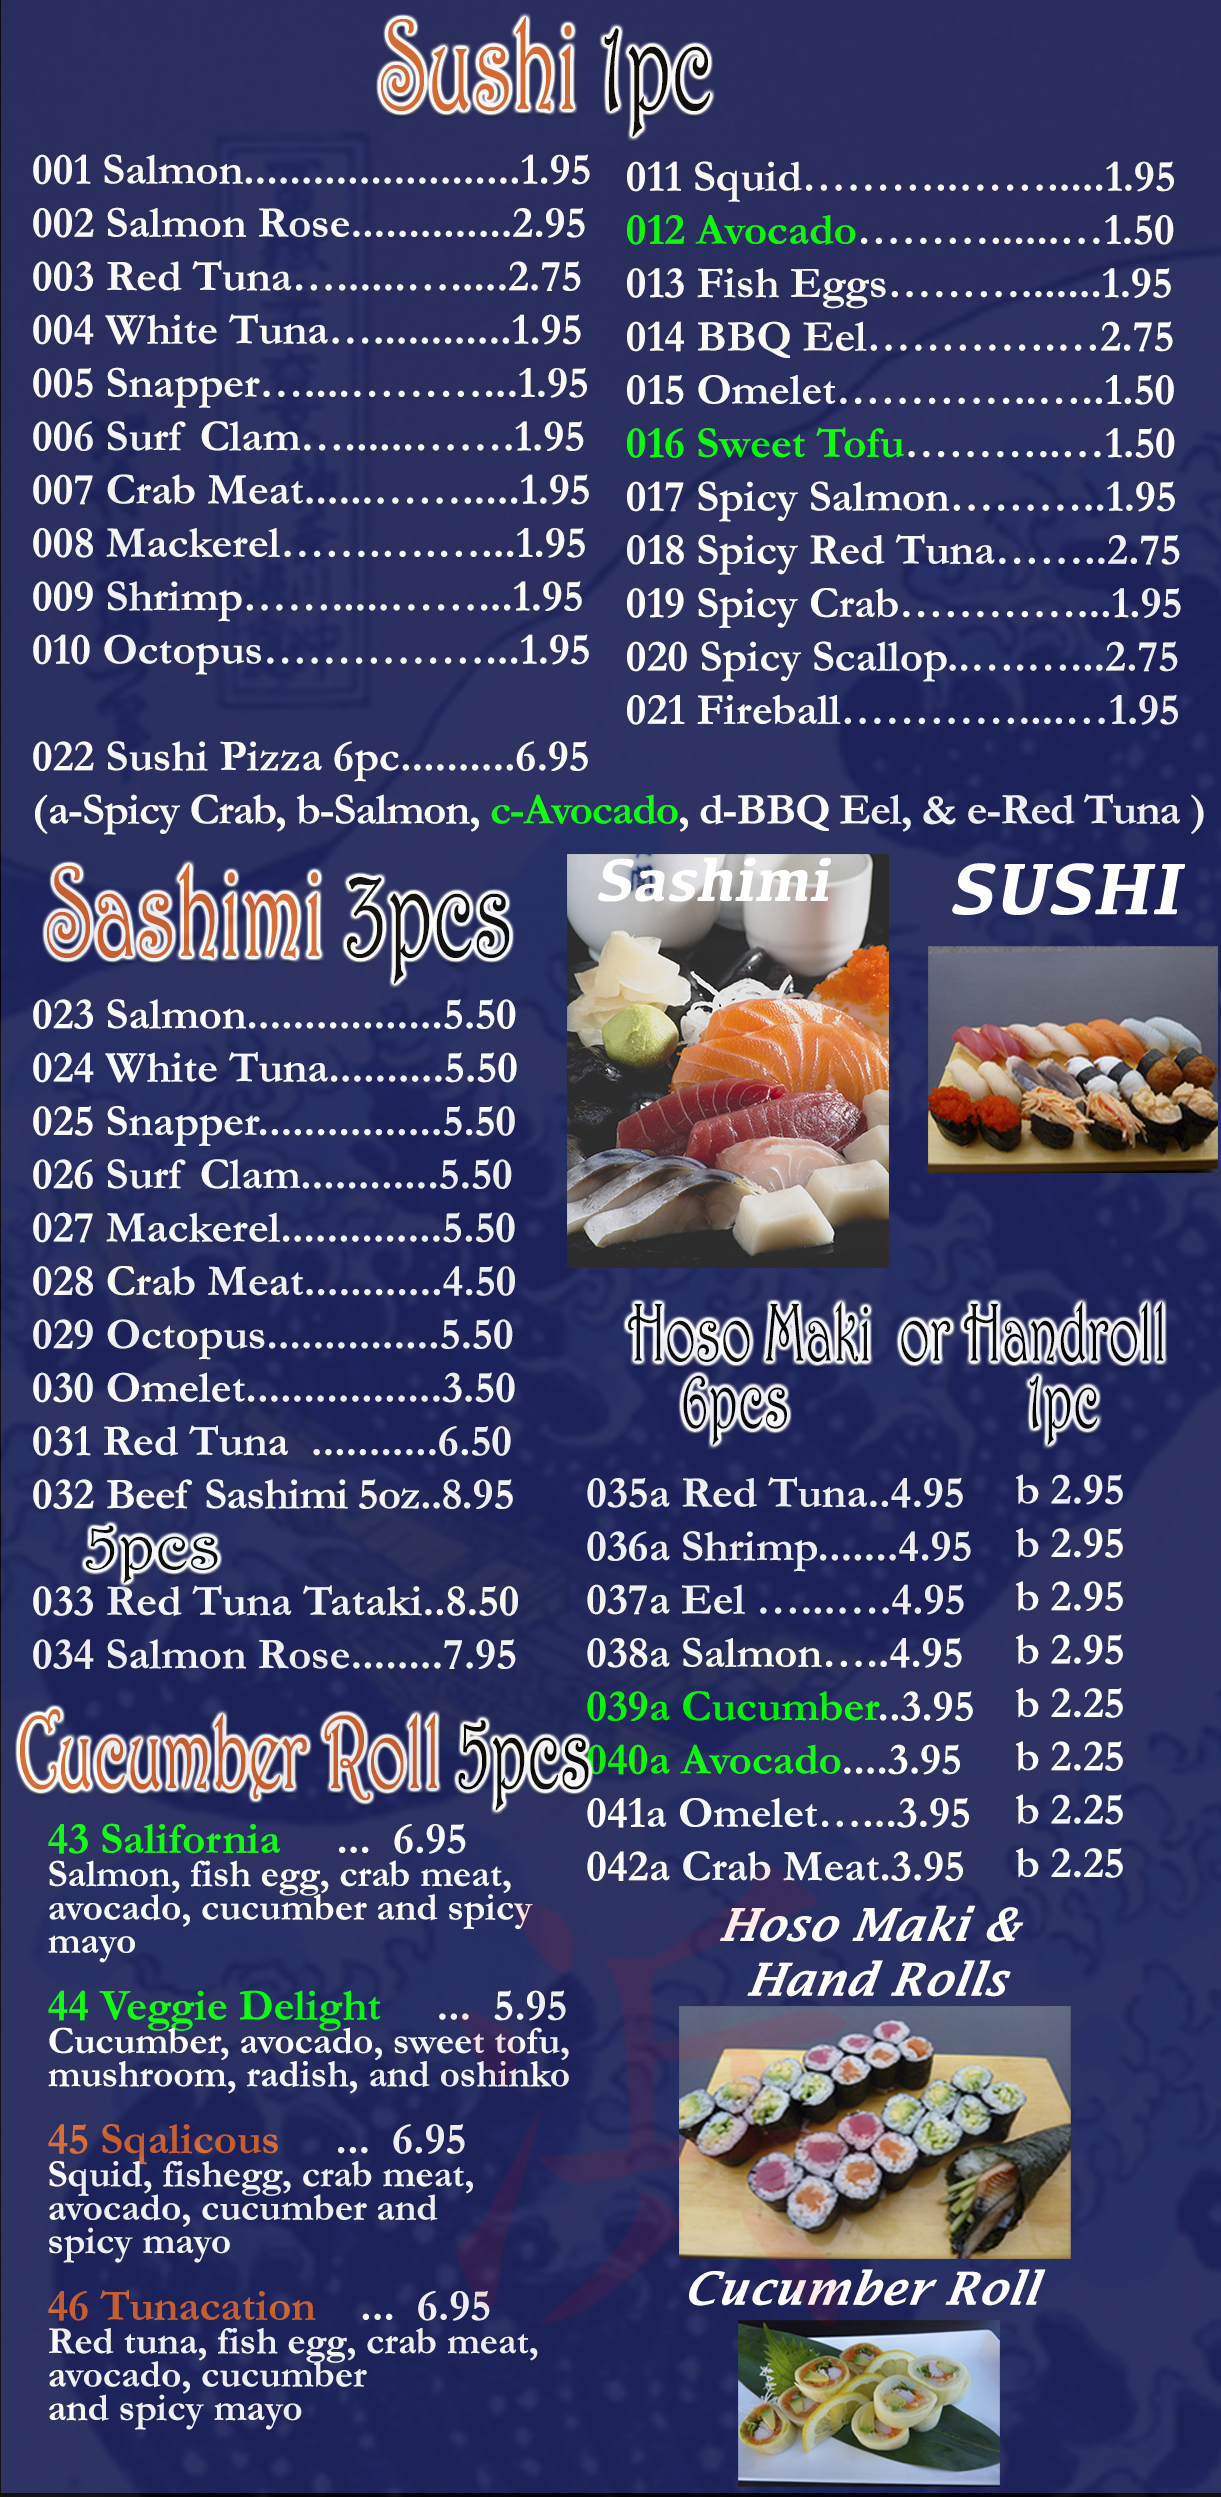 Sushi, Sashimi & Hoso